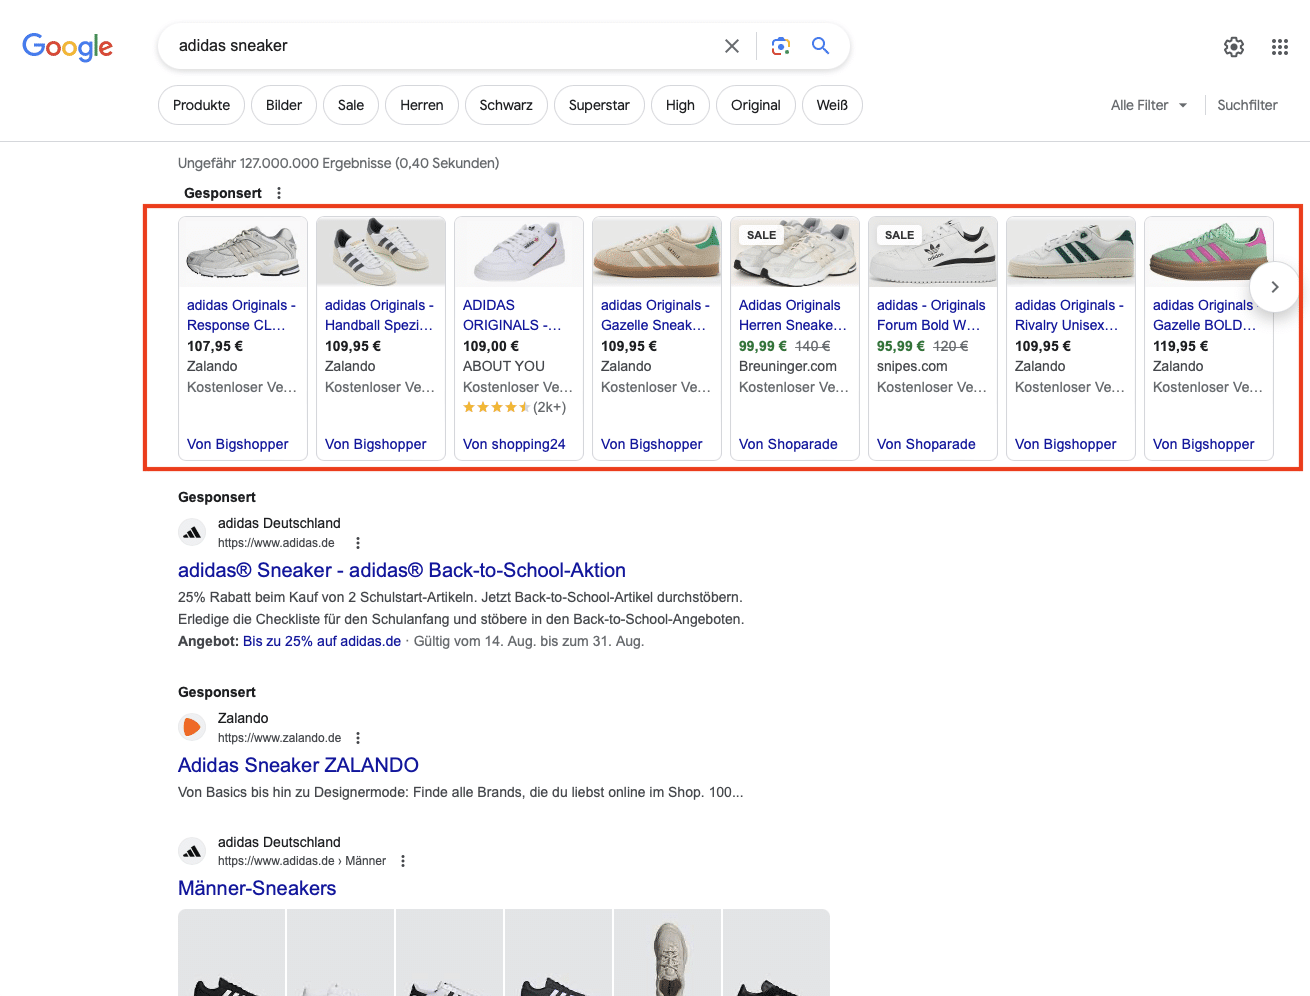 Google Shopping ist eine Vergleichsplattform, auf welcher Internetnutzer das Angebot verschiedener Online-Shops vergleichen und das für Sie beste Angebot auswählen können.